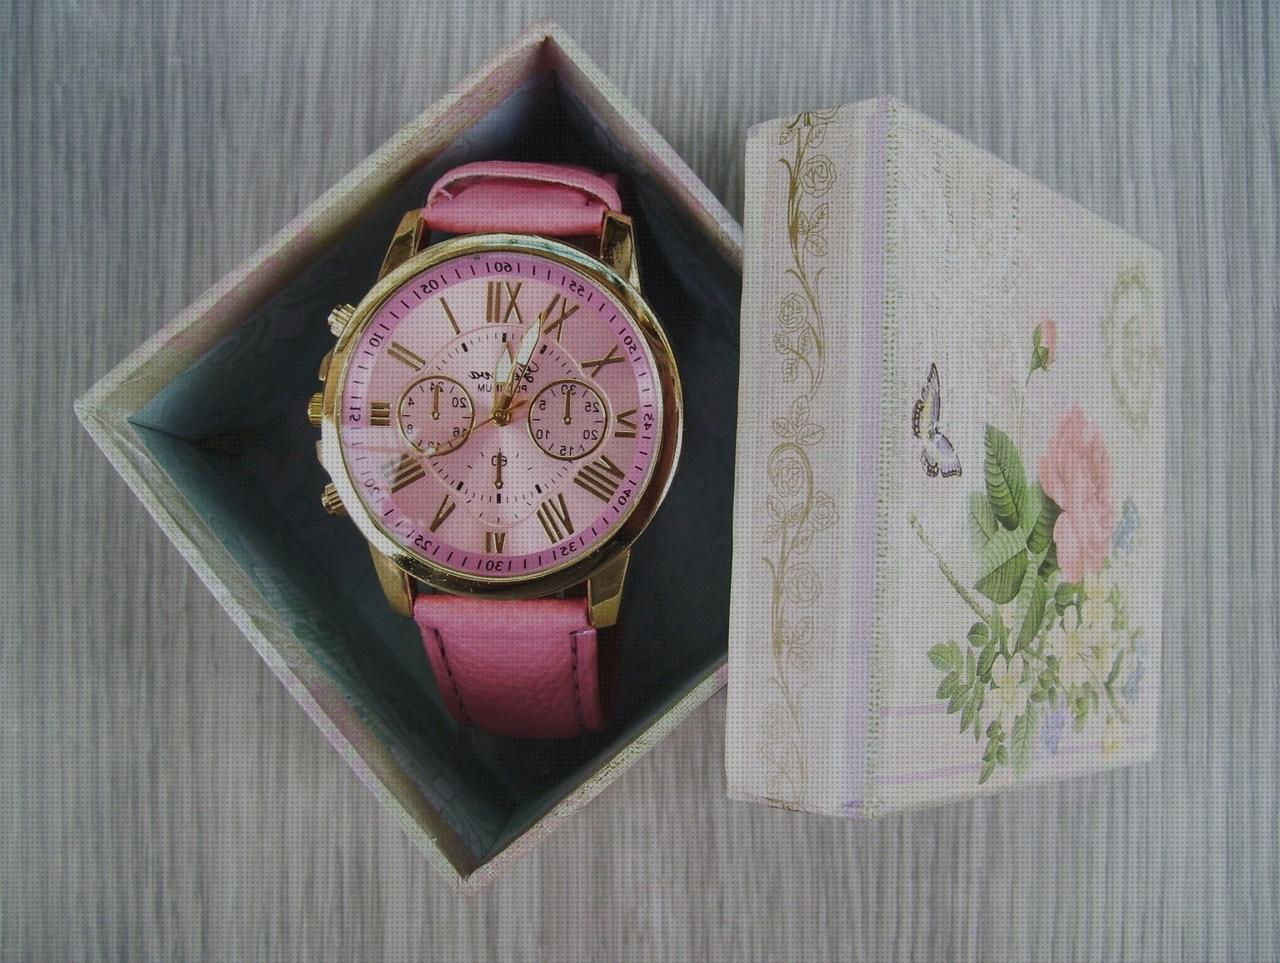 ¿Dónde poder comprar relojes bolsillo antiguosn baratos relojes decathlon baratos relojes baratos cajas de relojes de marca baratos?